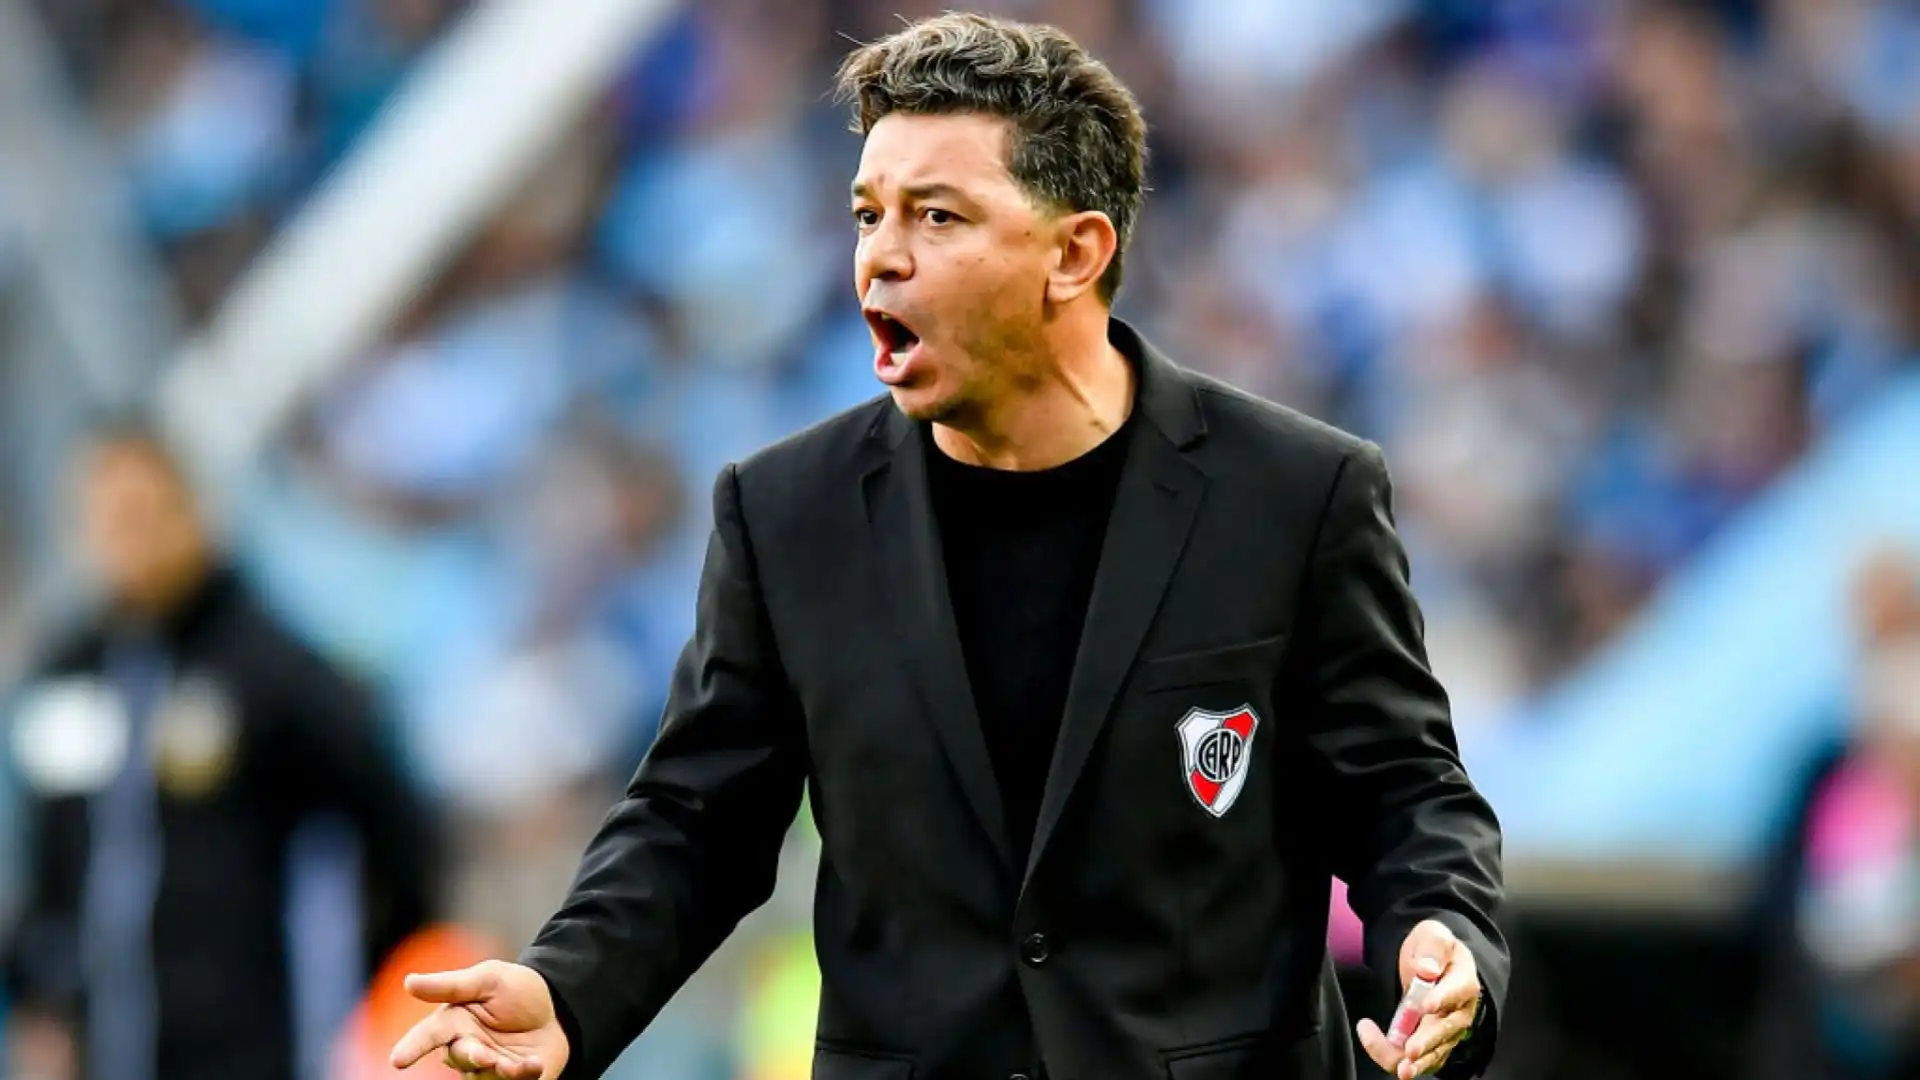 Un altro profilo tenuto in considerazione è quello di Marcelo Gallardo, il quale è alla ricerca di una nuova avventura dopo l'addio al River Plate nel 2022